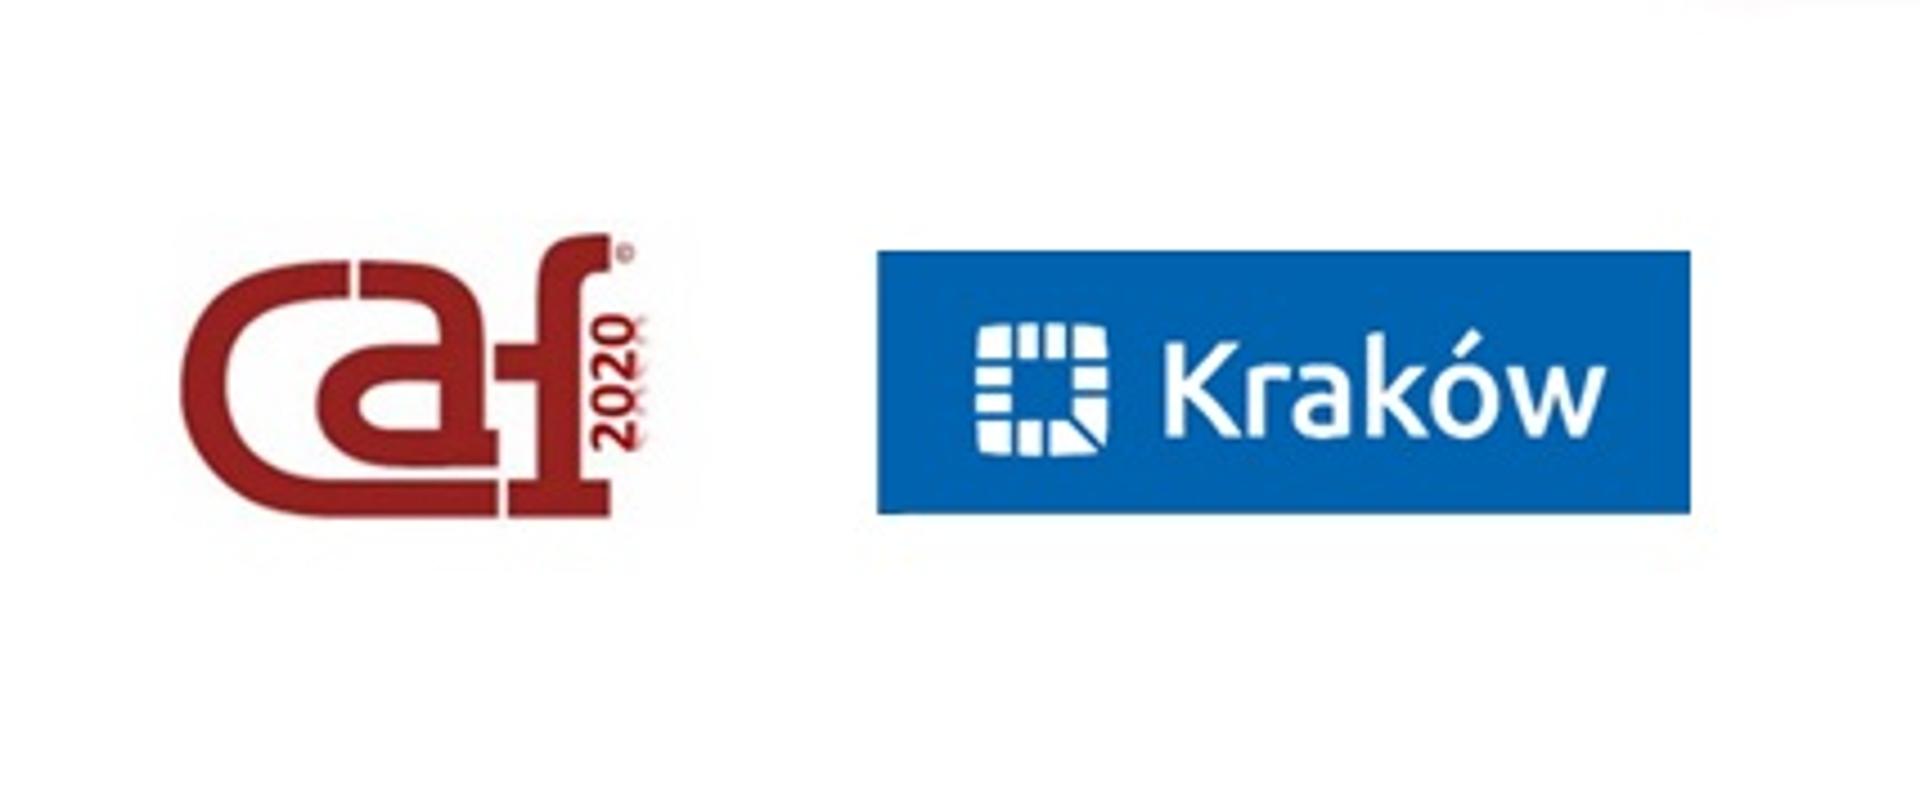 Czerwone logo CAF 2020 oraz logo Urzędu Miasta Krakowa